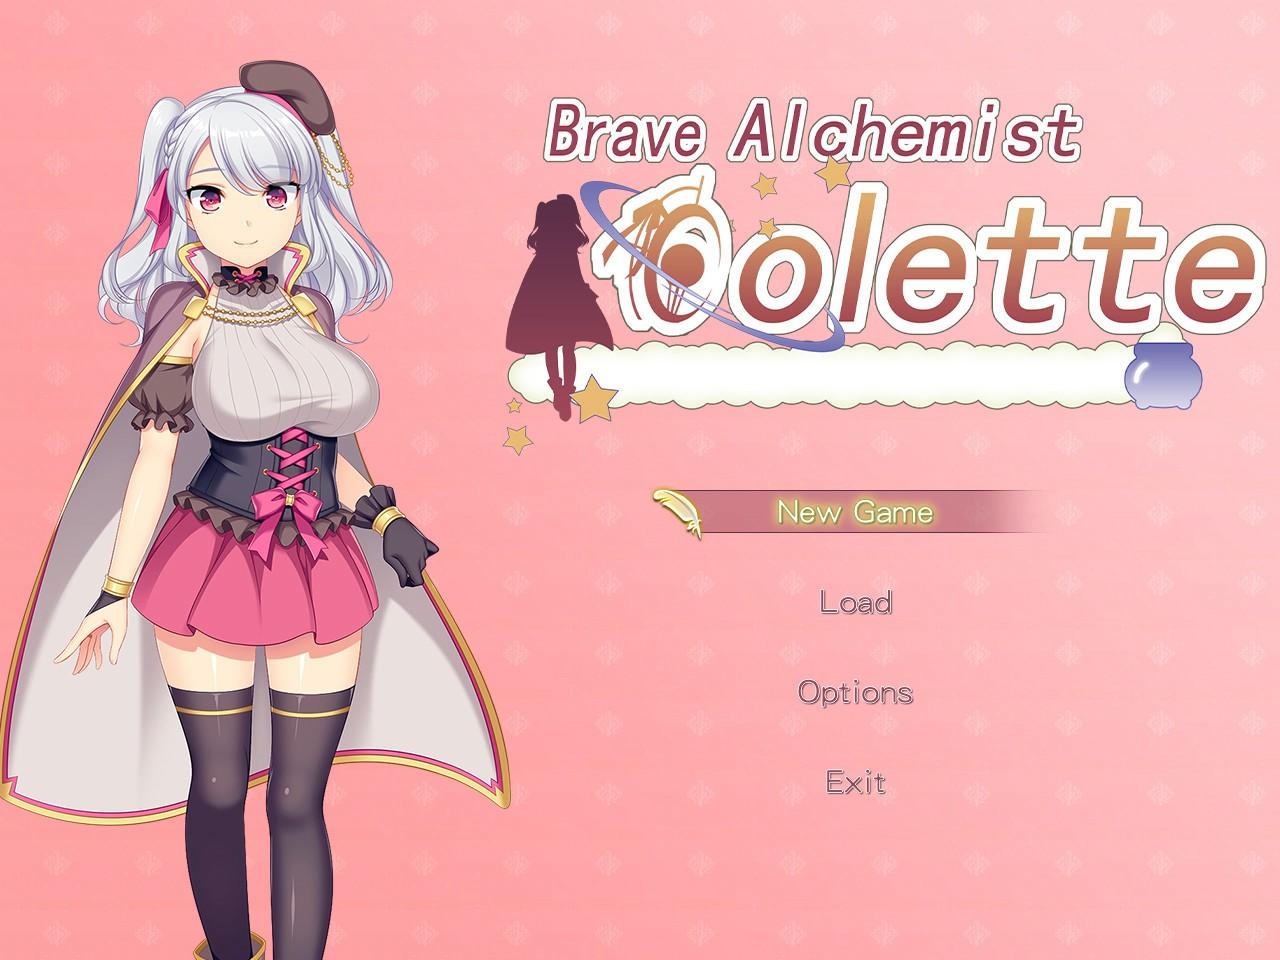 Brave Alchemist Colette Steam Altergift 30.17 usd